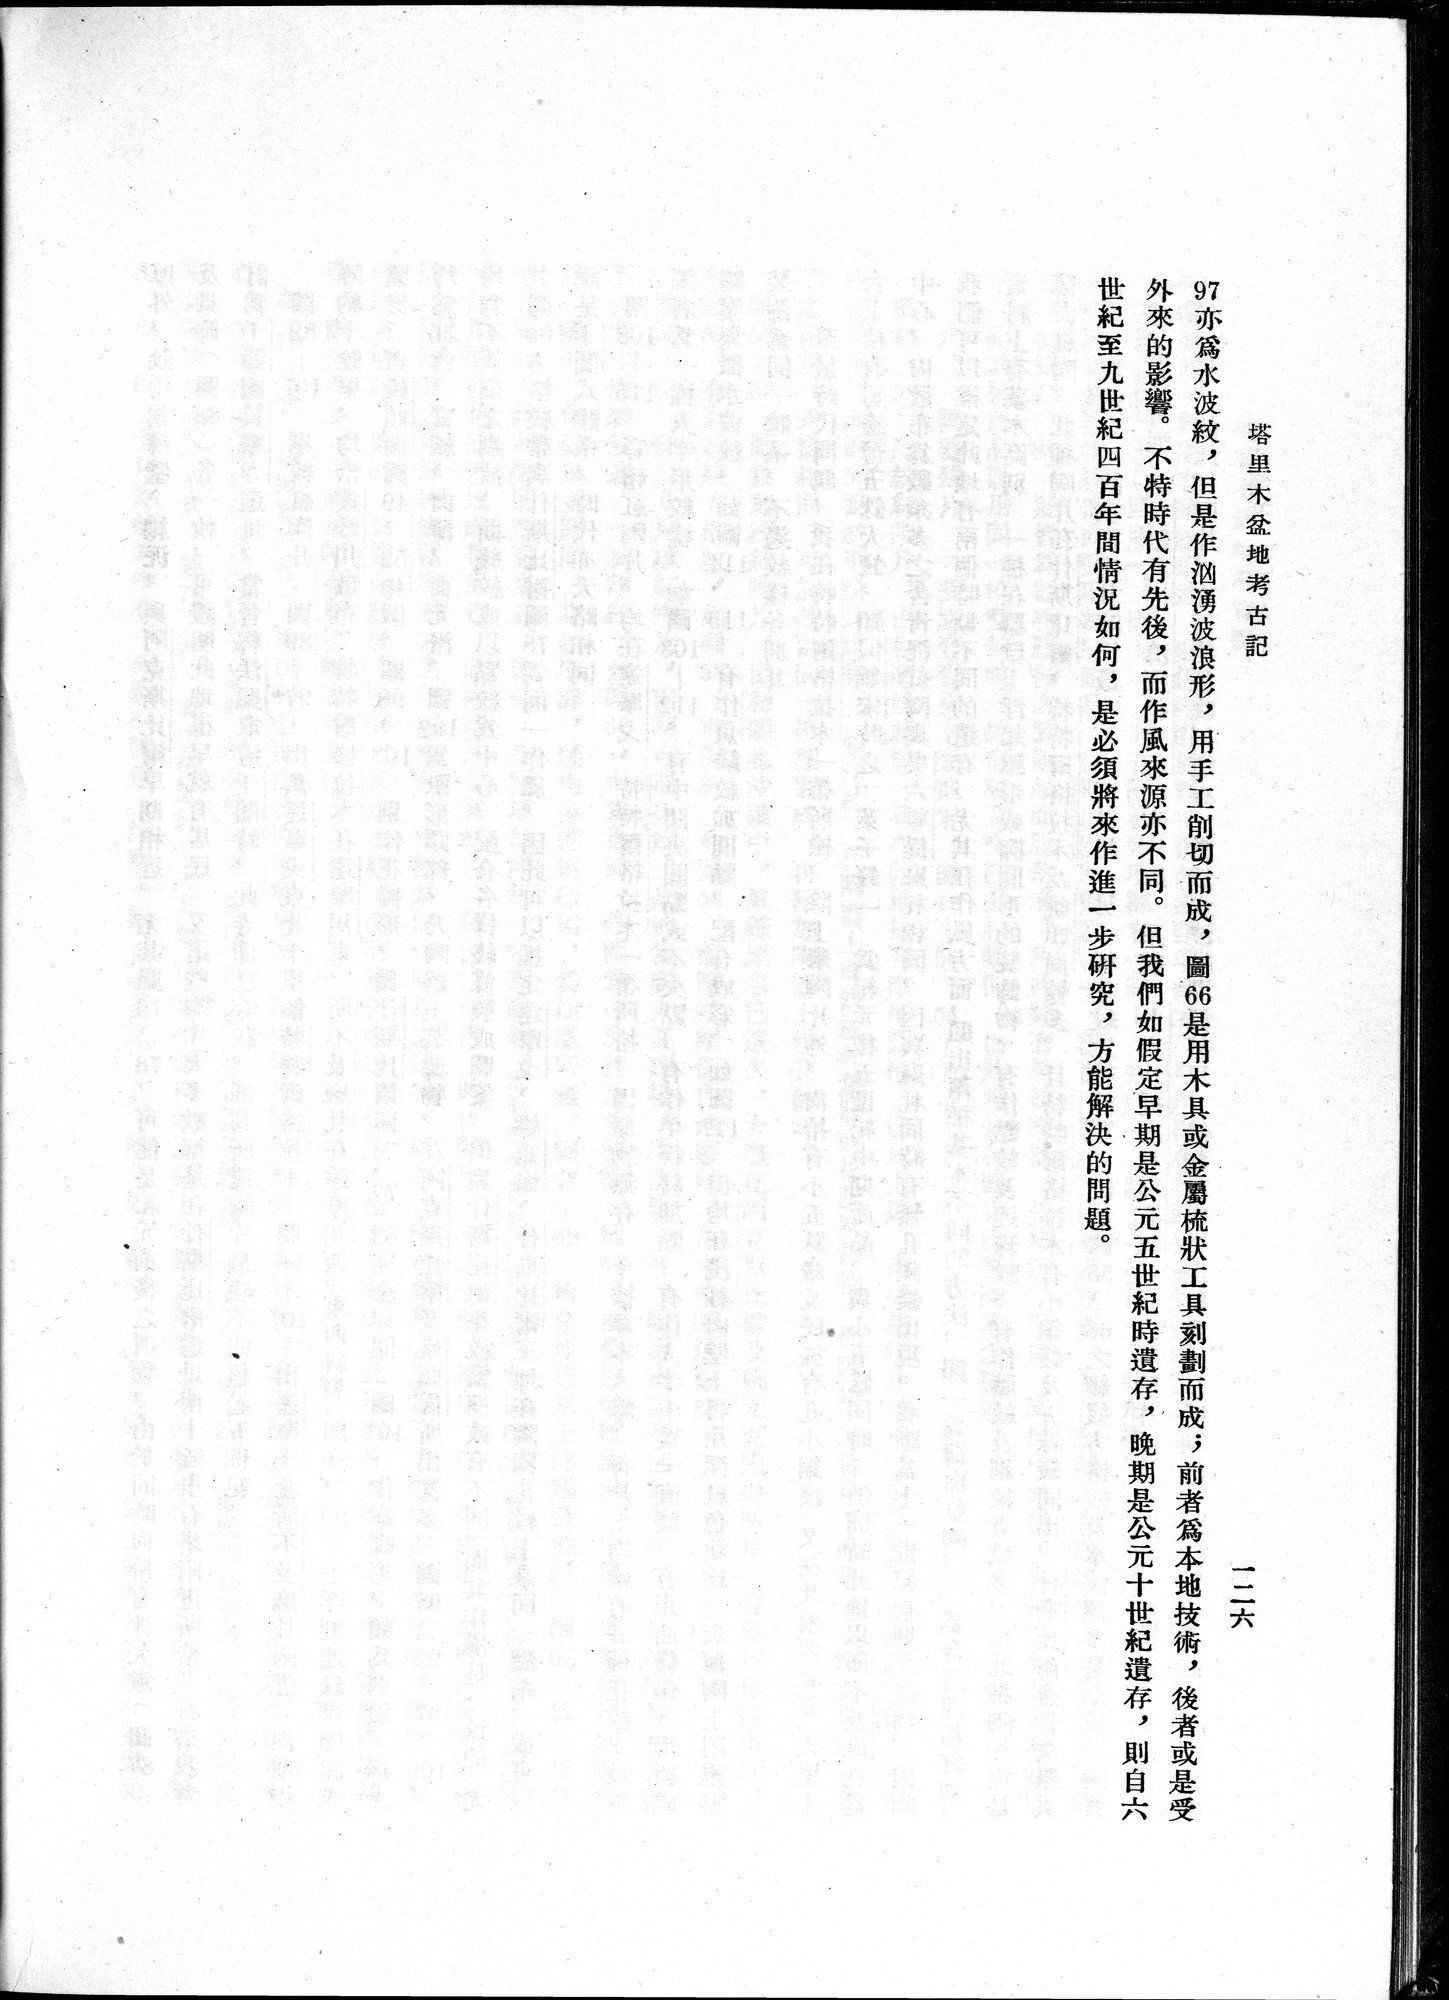 塔里木盆地考古記 : vol.1 / Page 190 (Grayscale High Resolution Image)